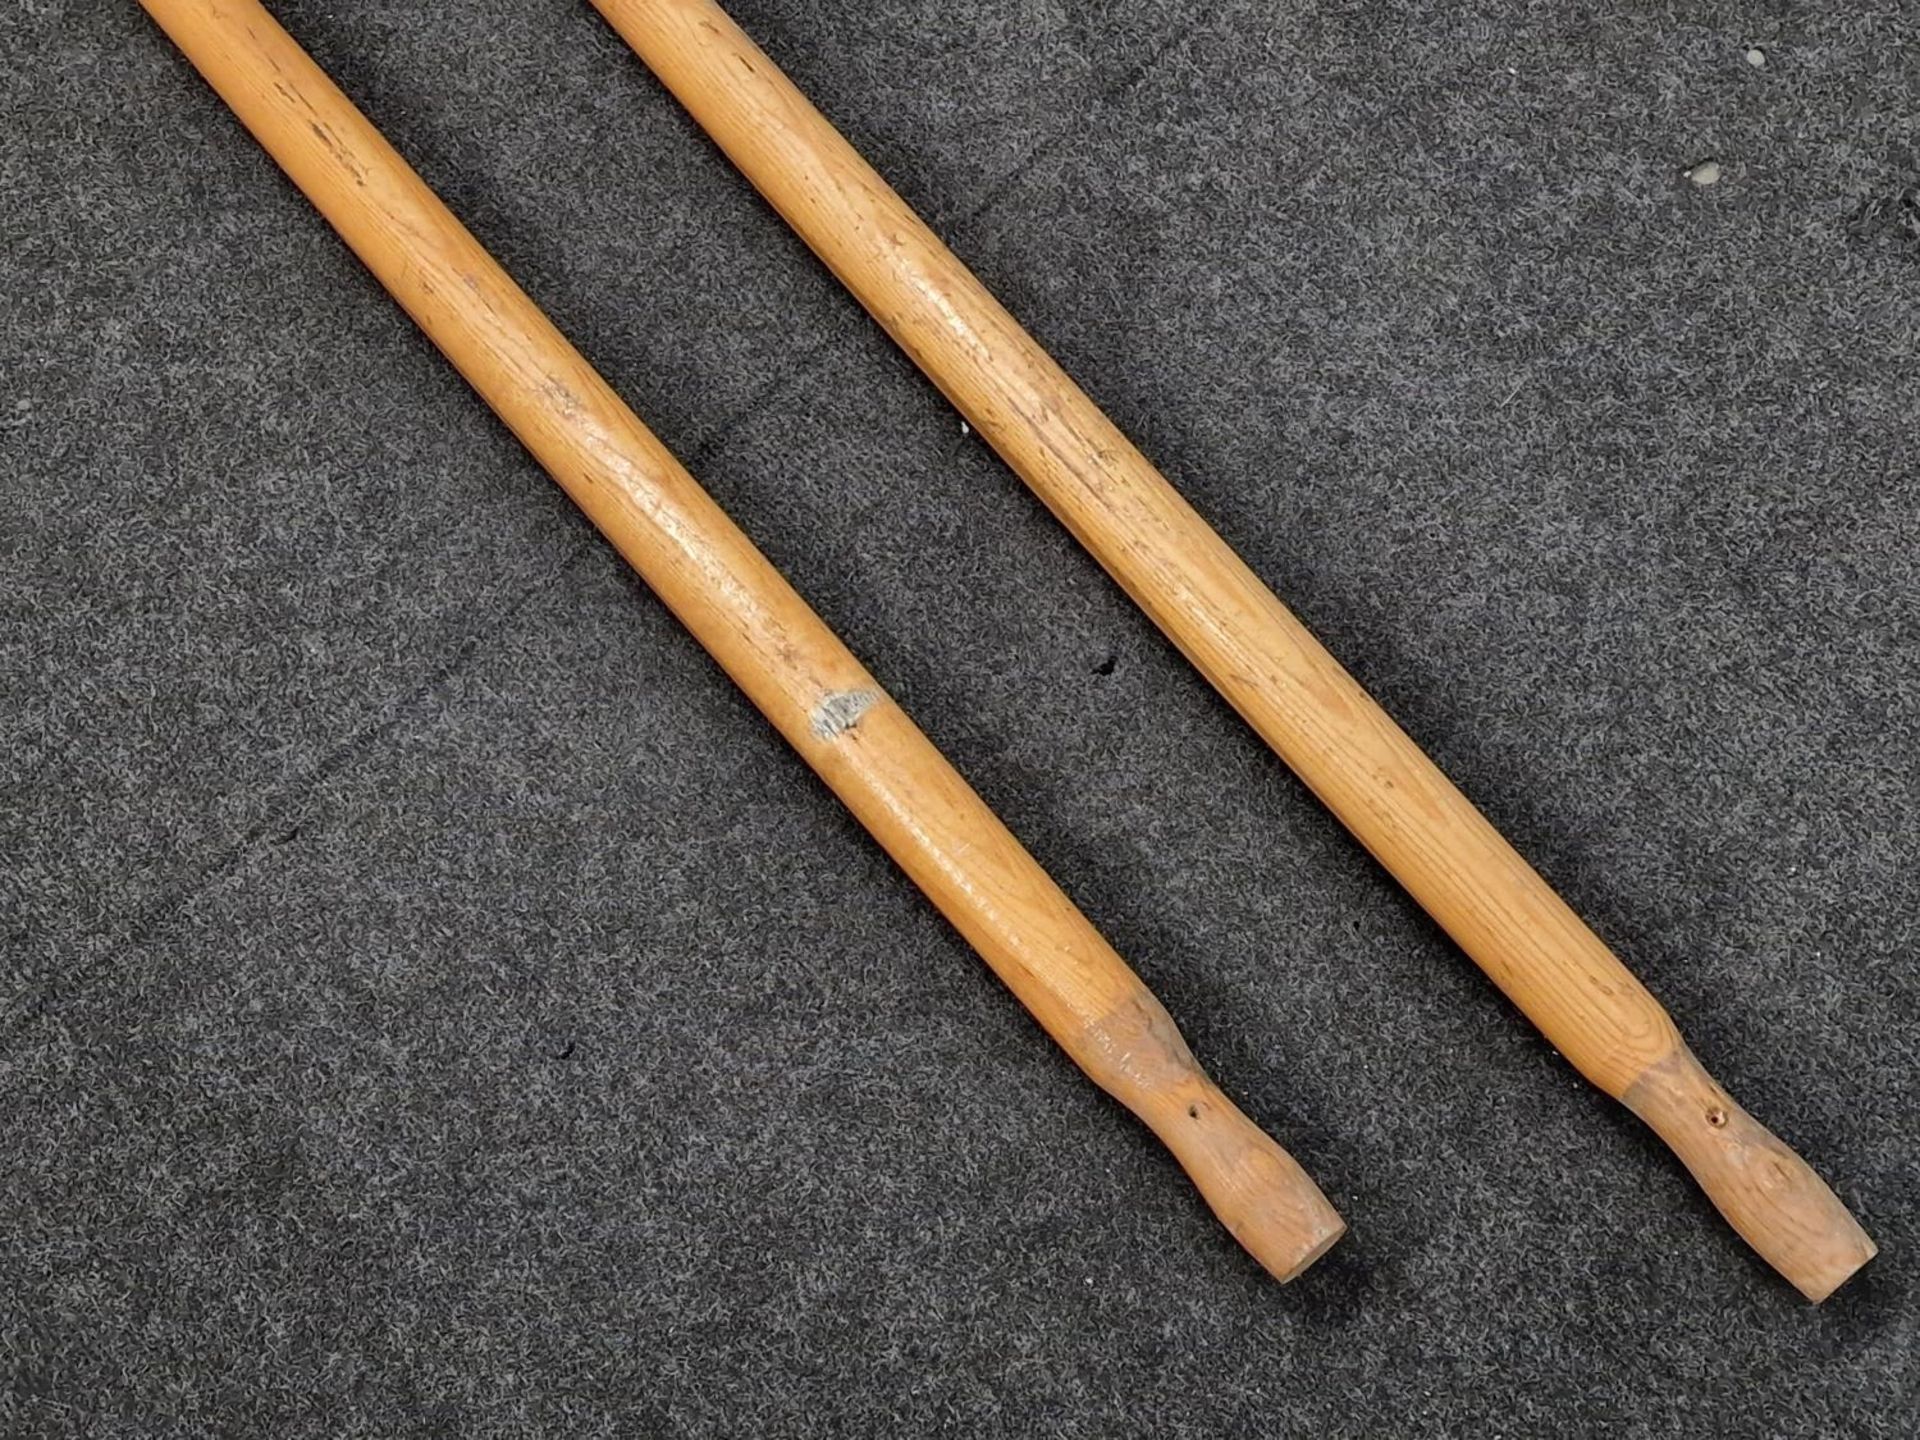 Pair of vintage wooden oars. - Image 3 of 3